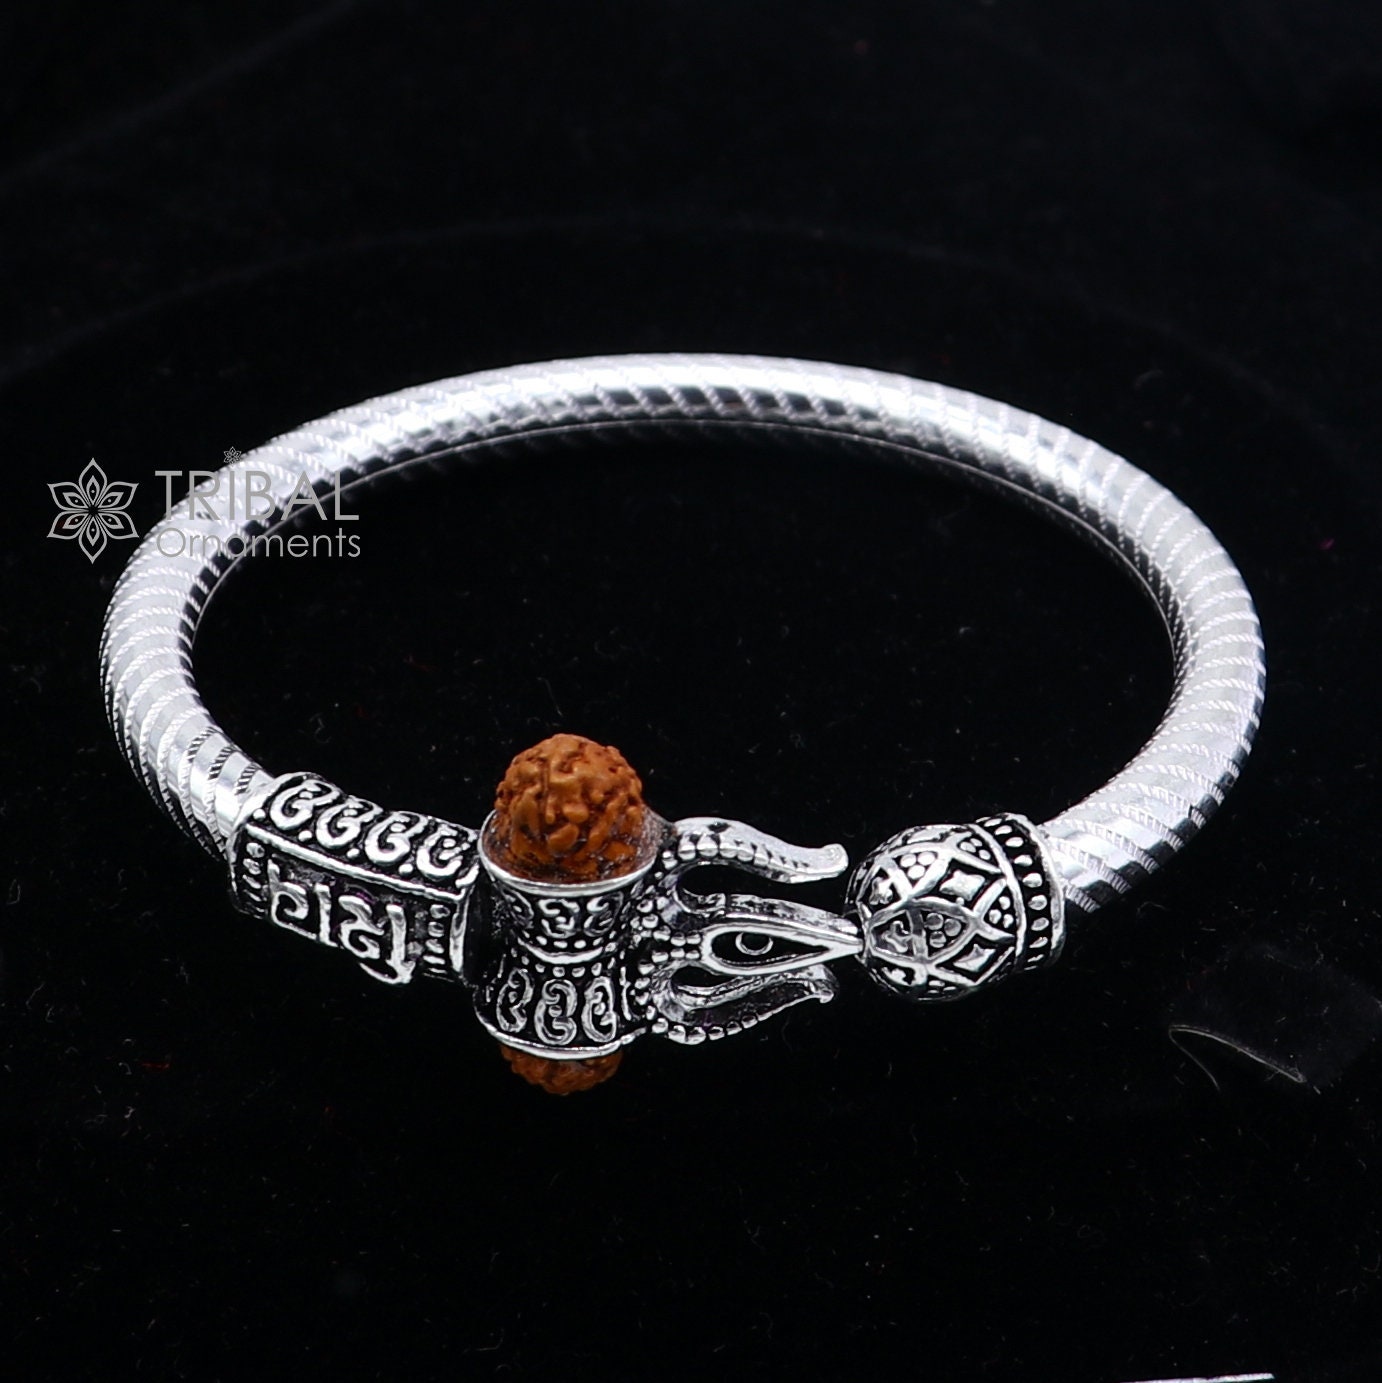 Handmade Sterling silver Lord Shiva Trident Kada Mahakal bracelet, Rudraksh bracelet, Babhubali kada girl's gifting jewelry nsk706 - TRIBAL ORNAMENTS